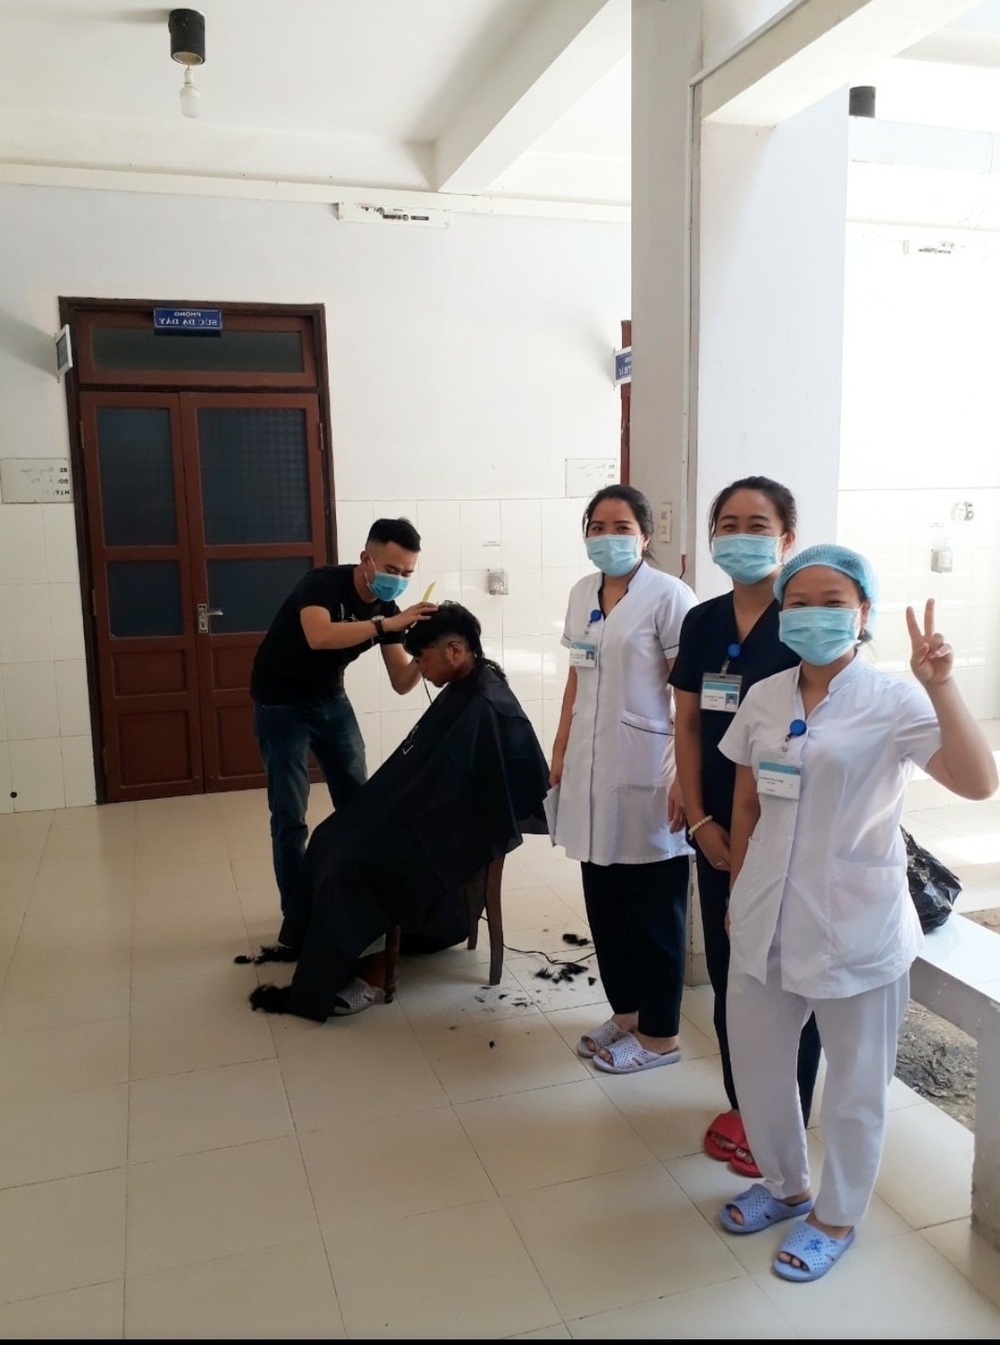 Ấm lòng hình ảnh y bác sĩ cắt tóc và chăm sóc cho người lang thang